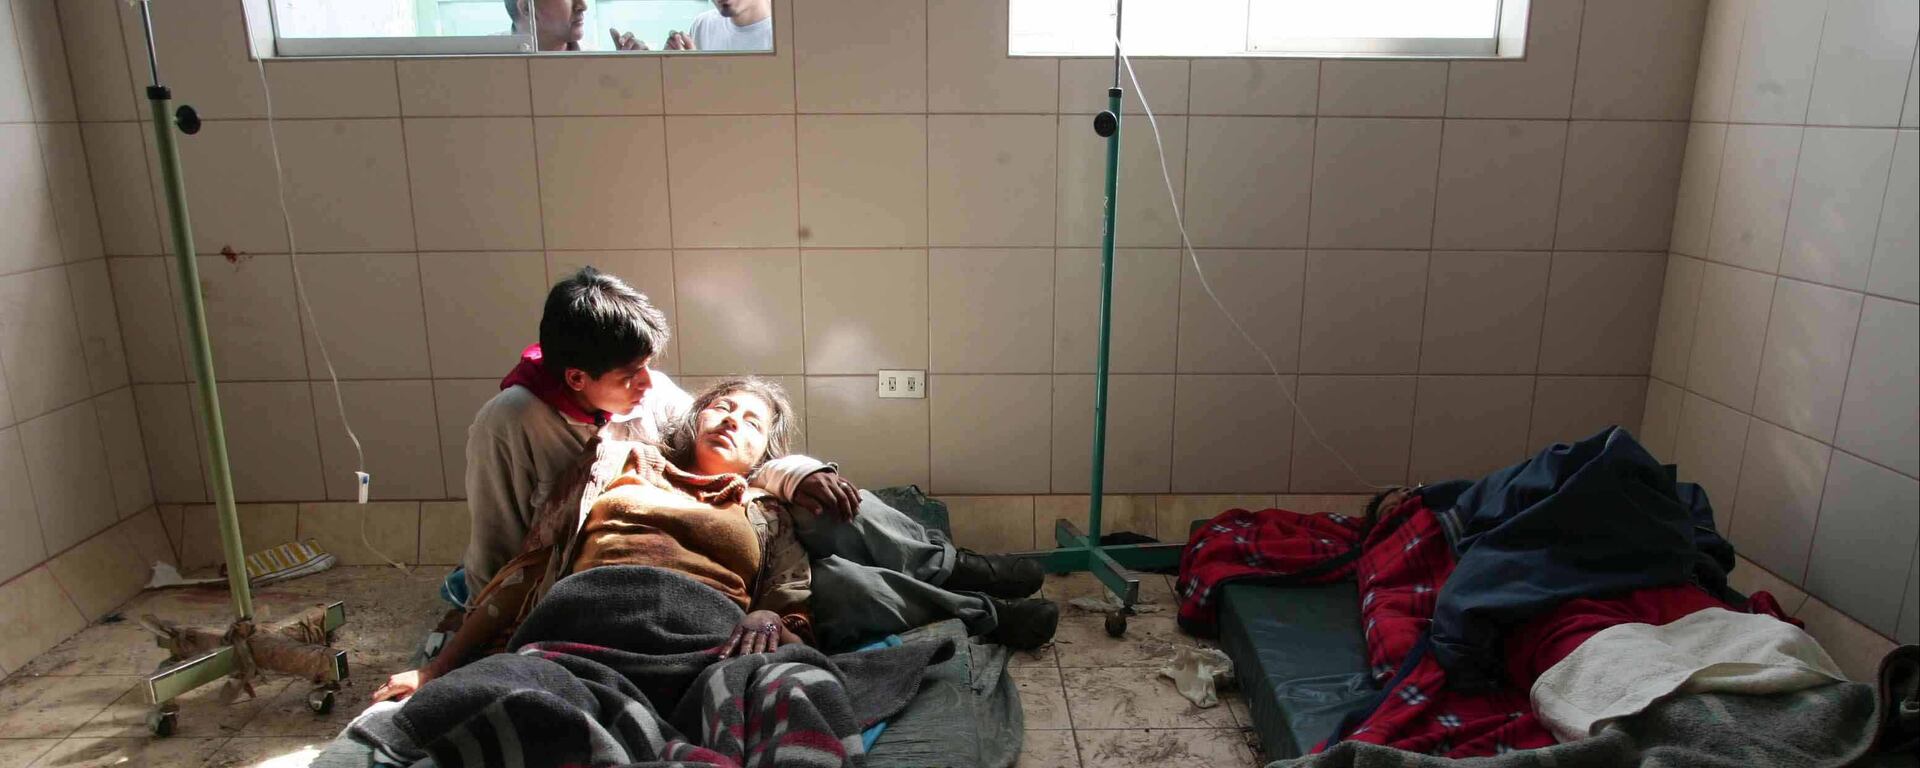 Algo parecido a la esperanza: La historia de una pareja sobreviviente tras el terremoto de Pisco de 2007